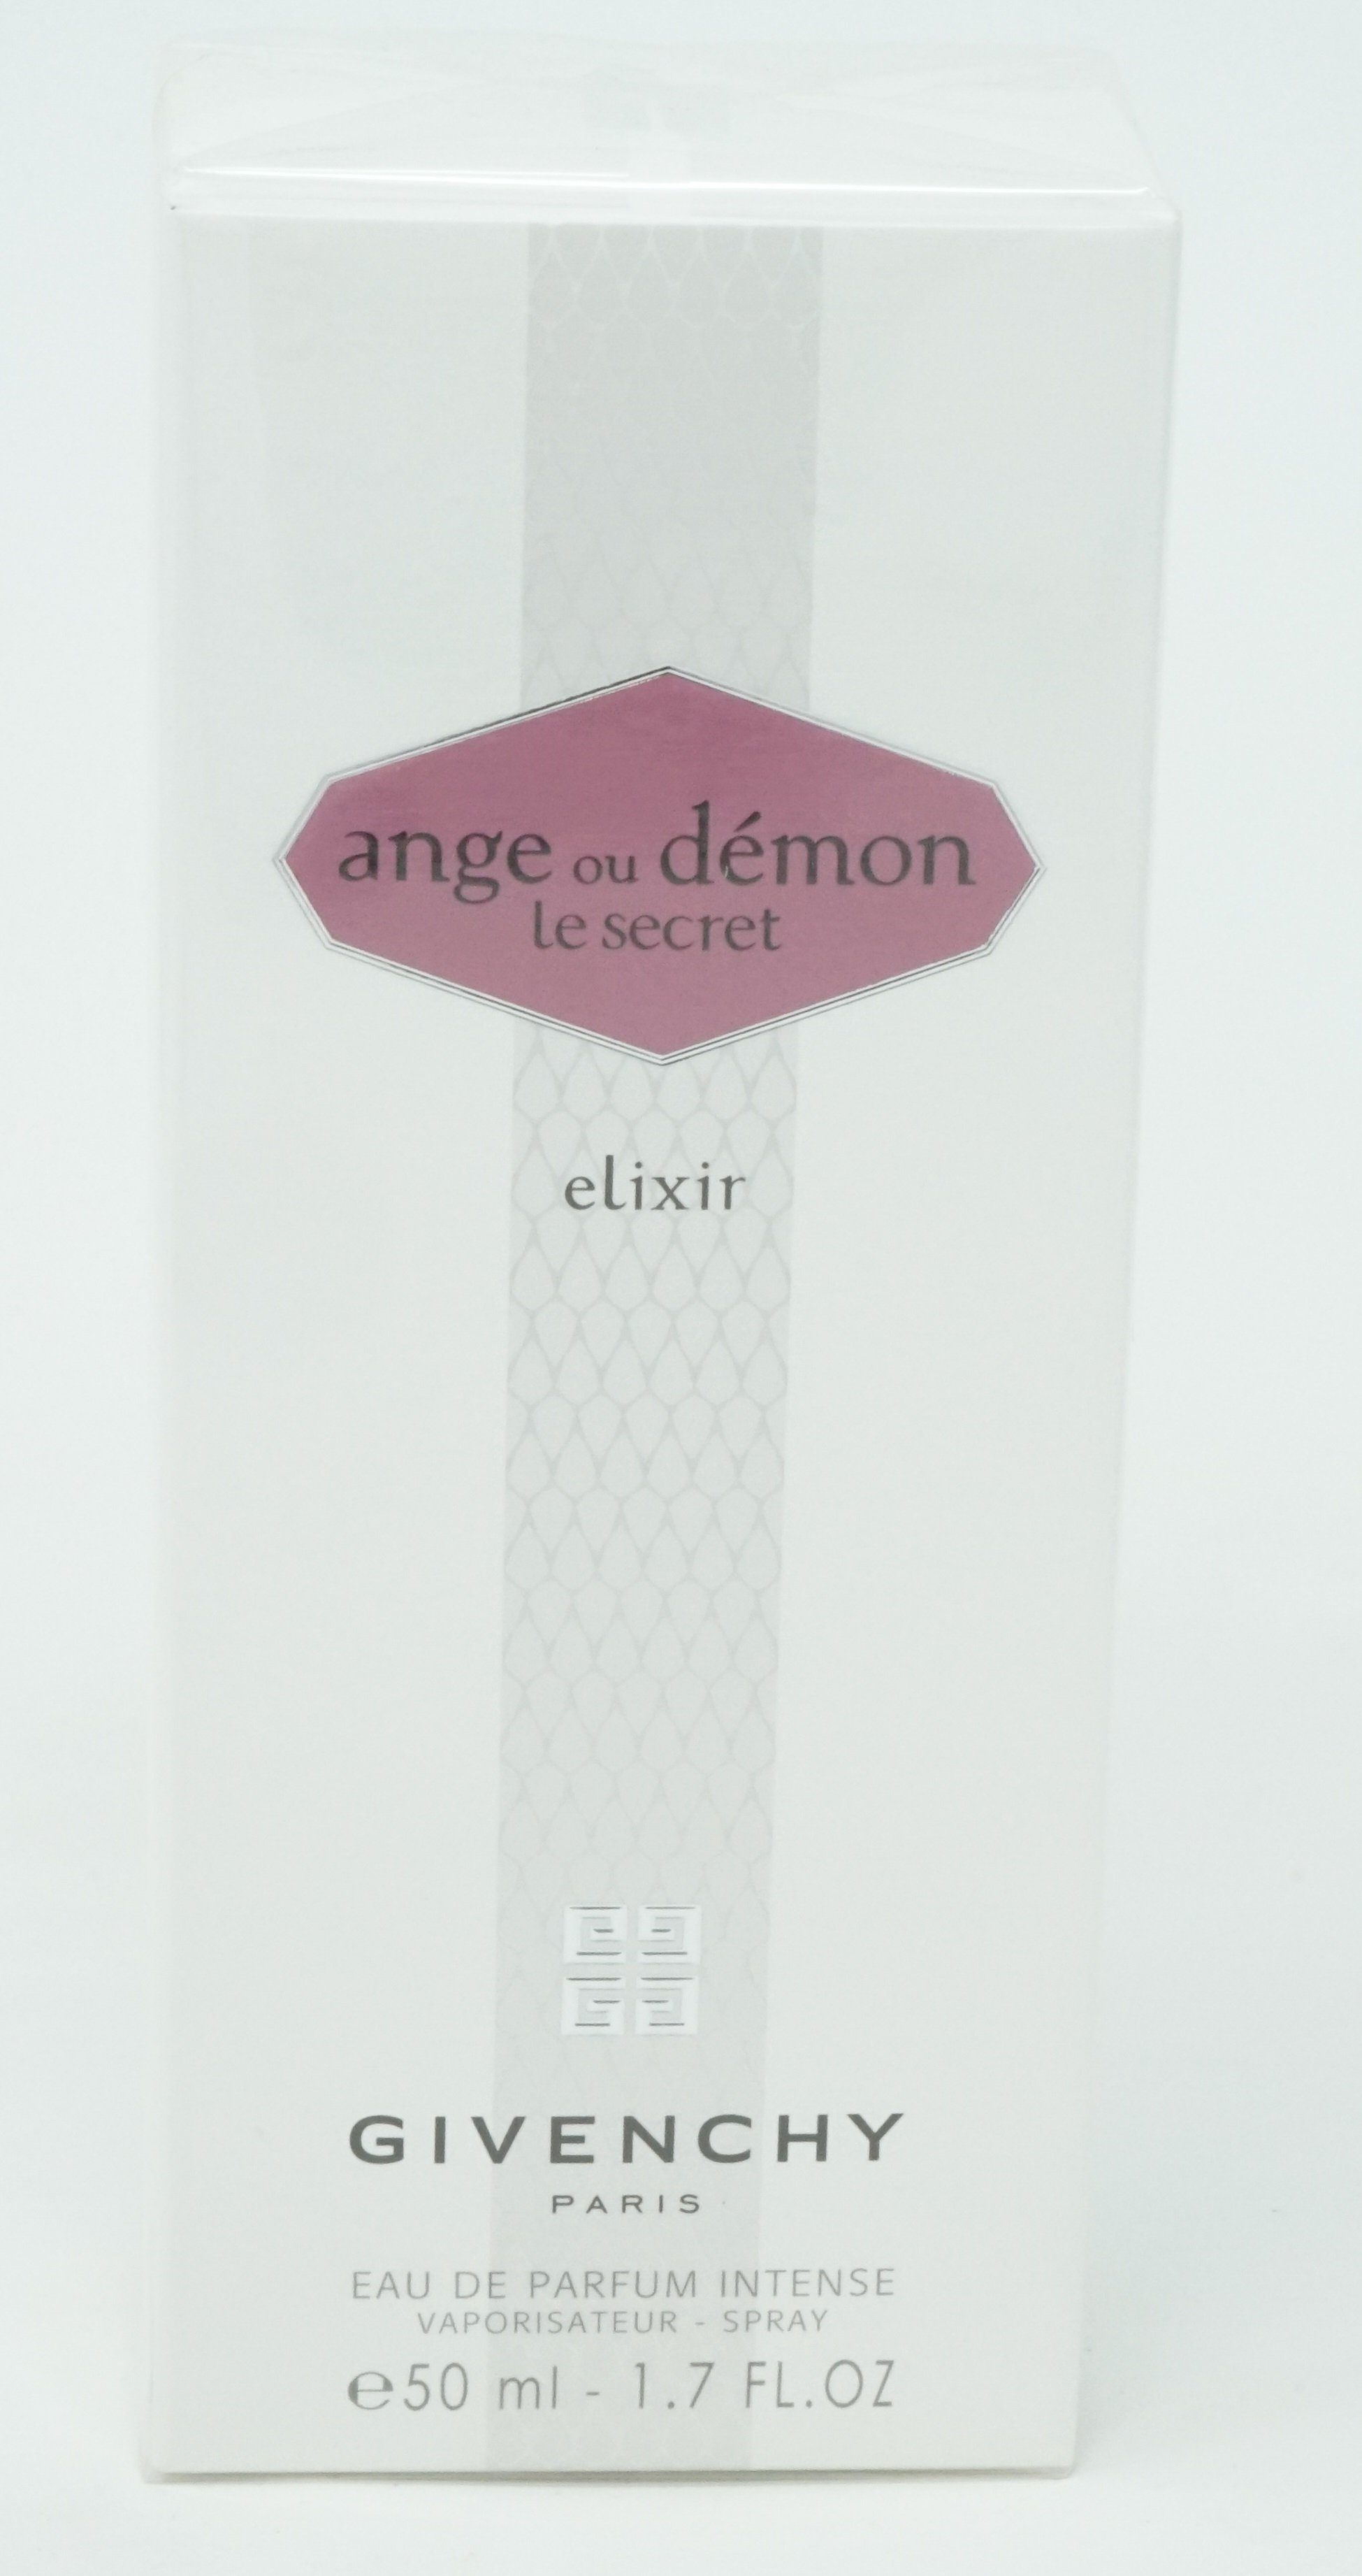 GIVENCHY Eau de Parfum Givenchy Ange ou Demon Le Secret Elixir Eau de Parfum Intense 50ml